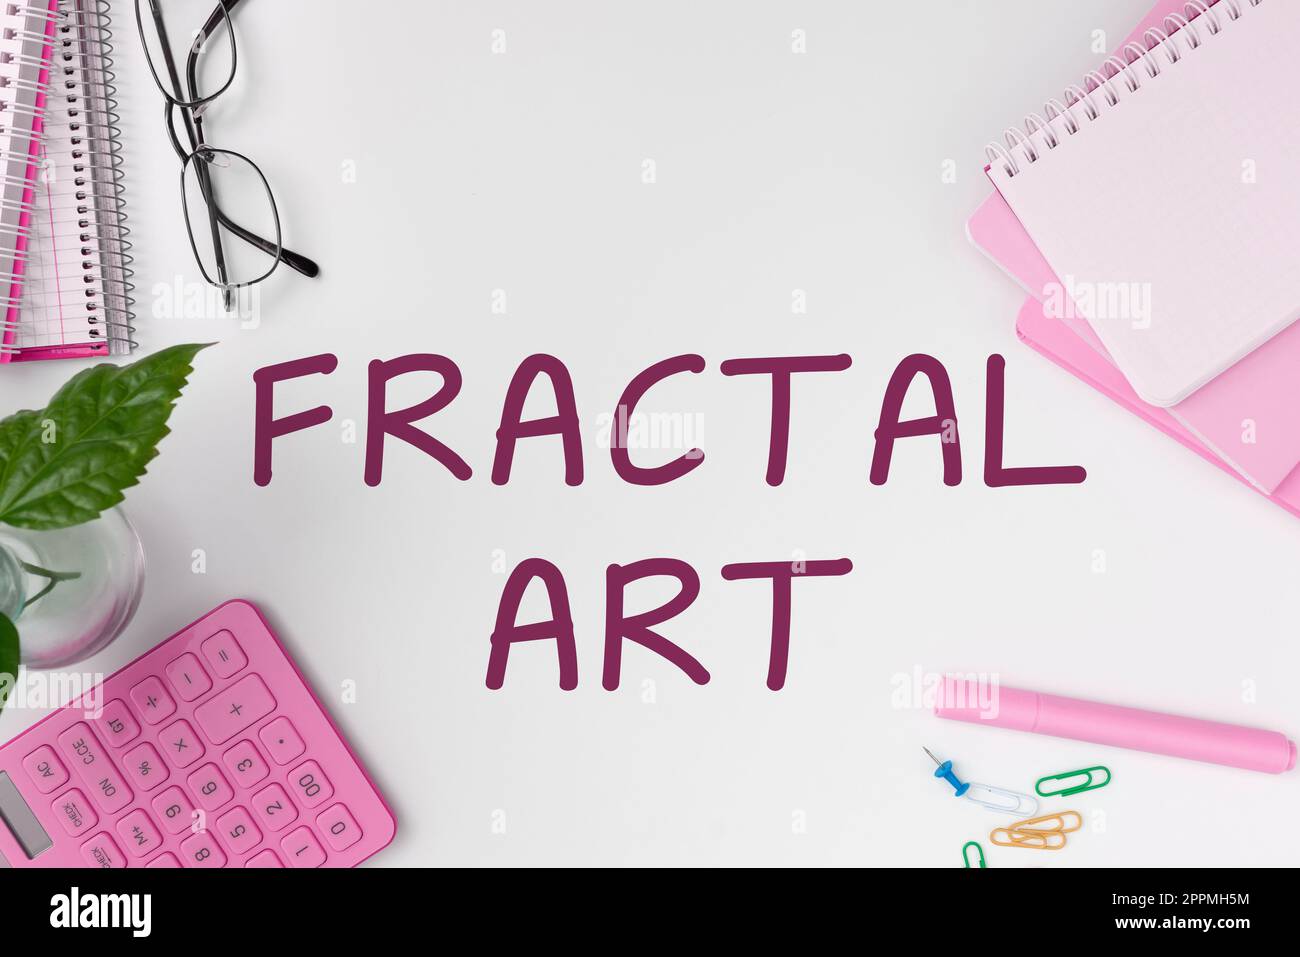 Handschriftliches Schild Fractal Art. Wort für den Ort oder Abschnitt einer Website, der für die öffentliche Diskussion verwendet wird Stockfoto